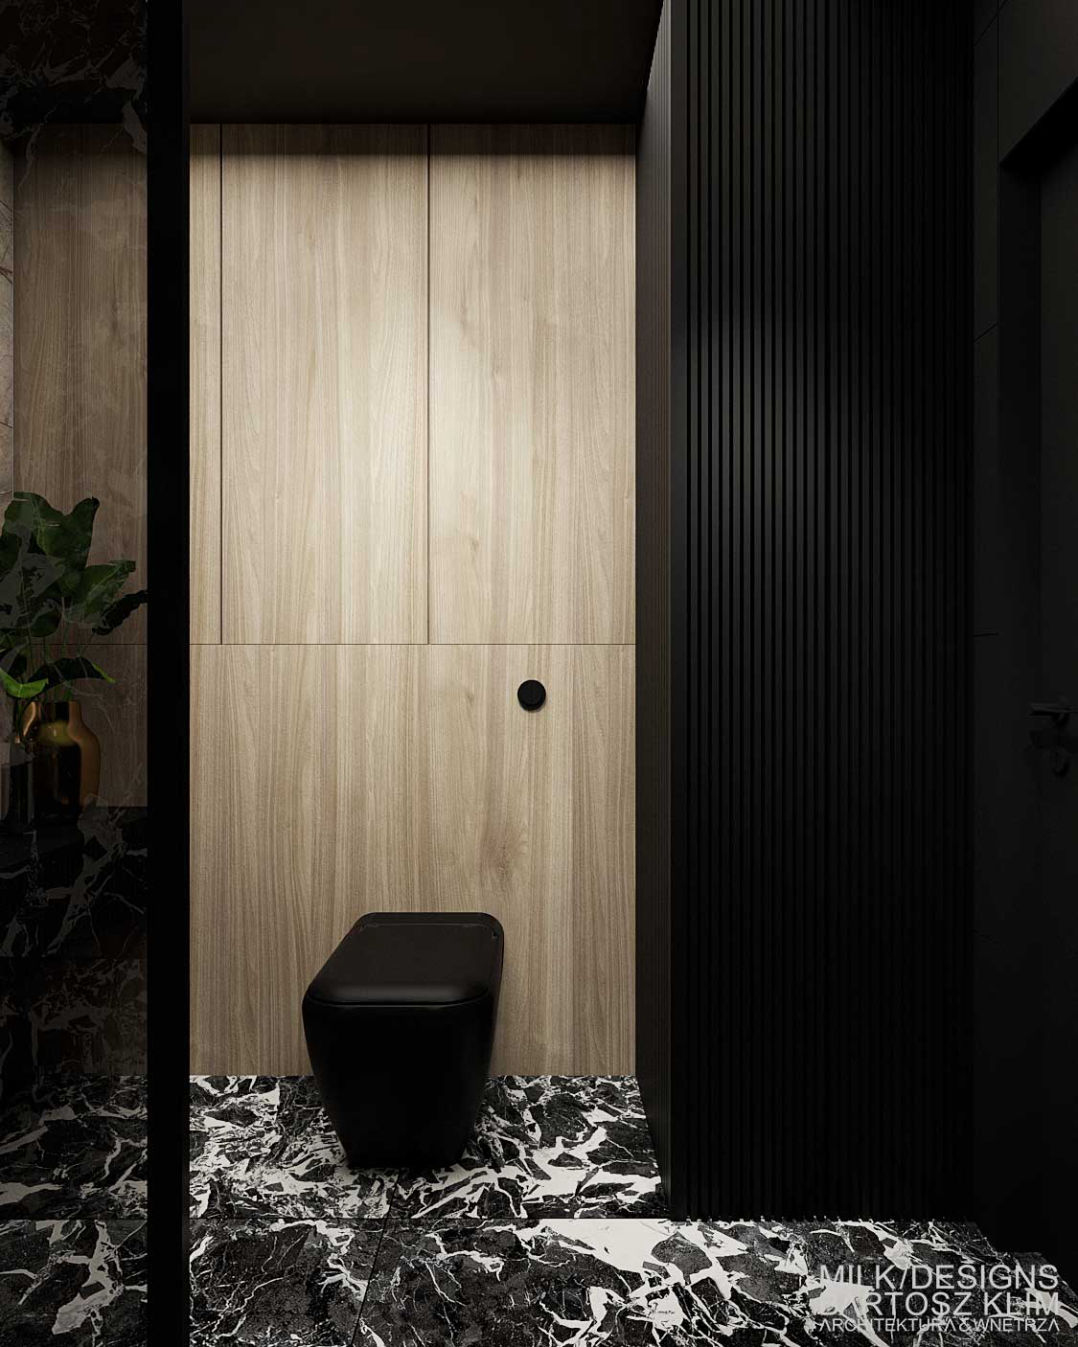 projekt wnętrza luksusowego apartamentu – łazienka w czarnym i białym marmurze z elementami bębowego drewna - MILK DESIGNS PROJEKTOWANIE WNĘTRZ